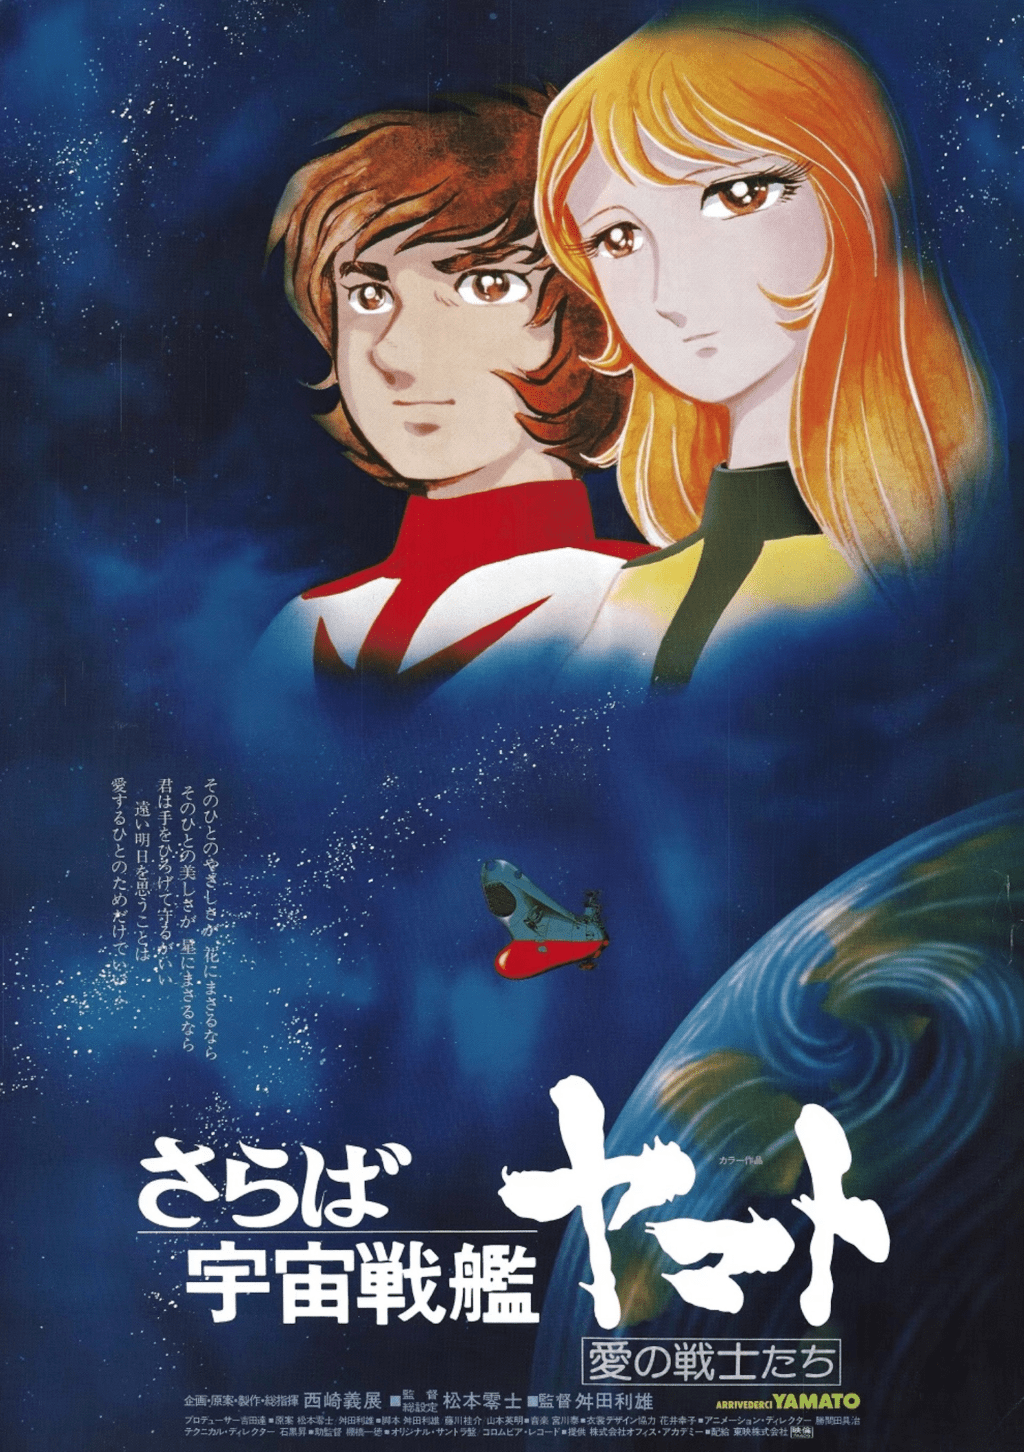 《宇宙战舰大和号》是日本最具影响力的动漫系列之一。其故事以严肃的主题和复杂的故事情节为主轴，在播映后大获好评，因而引起了科幻动画片的热潮。